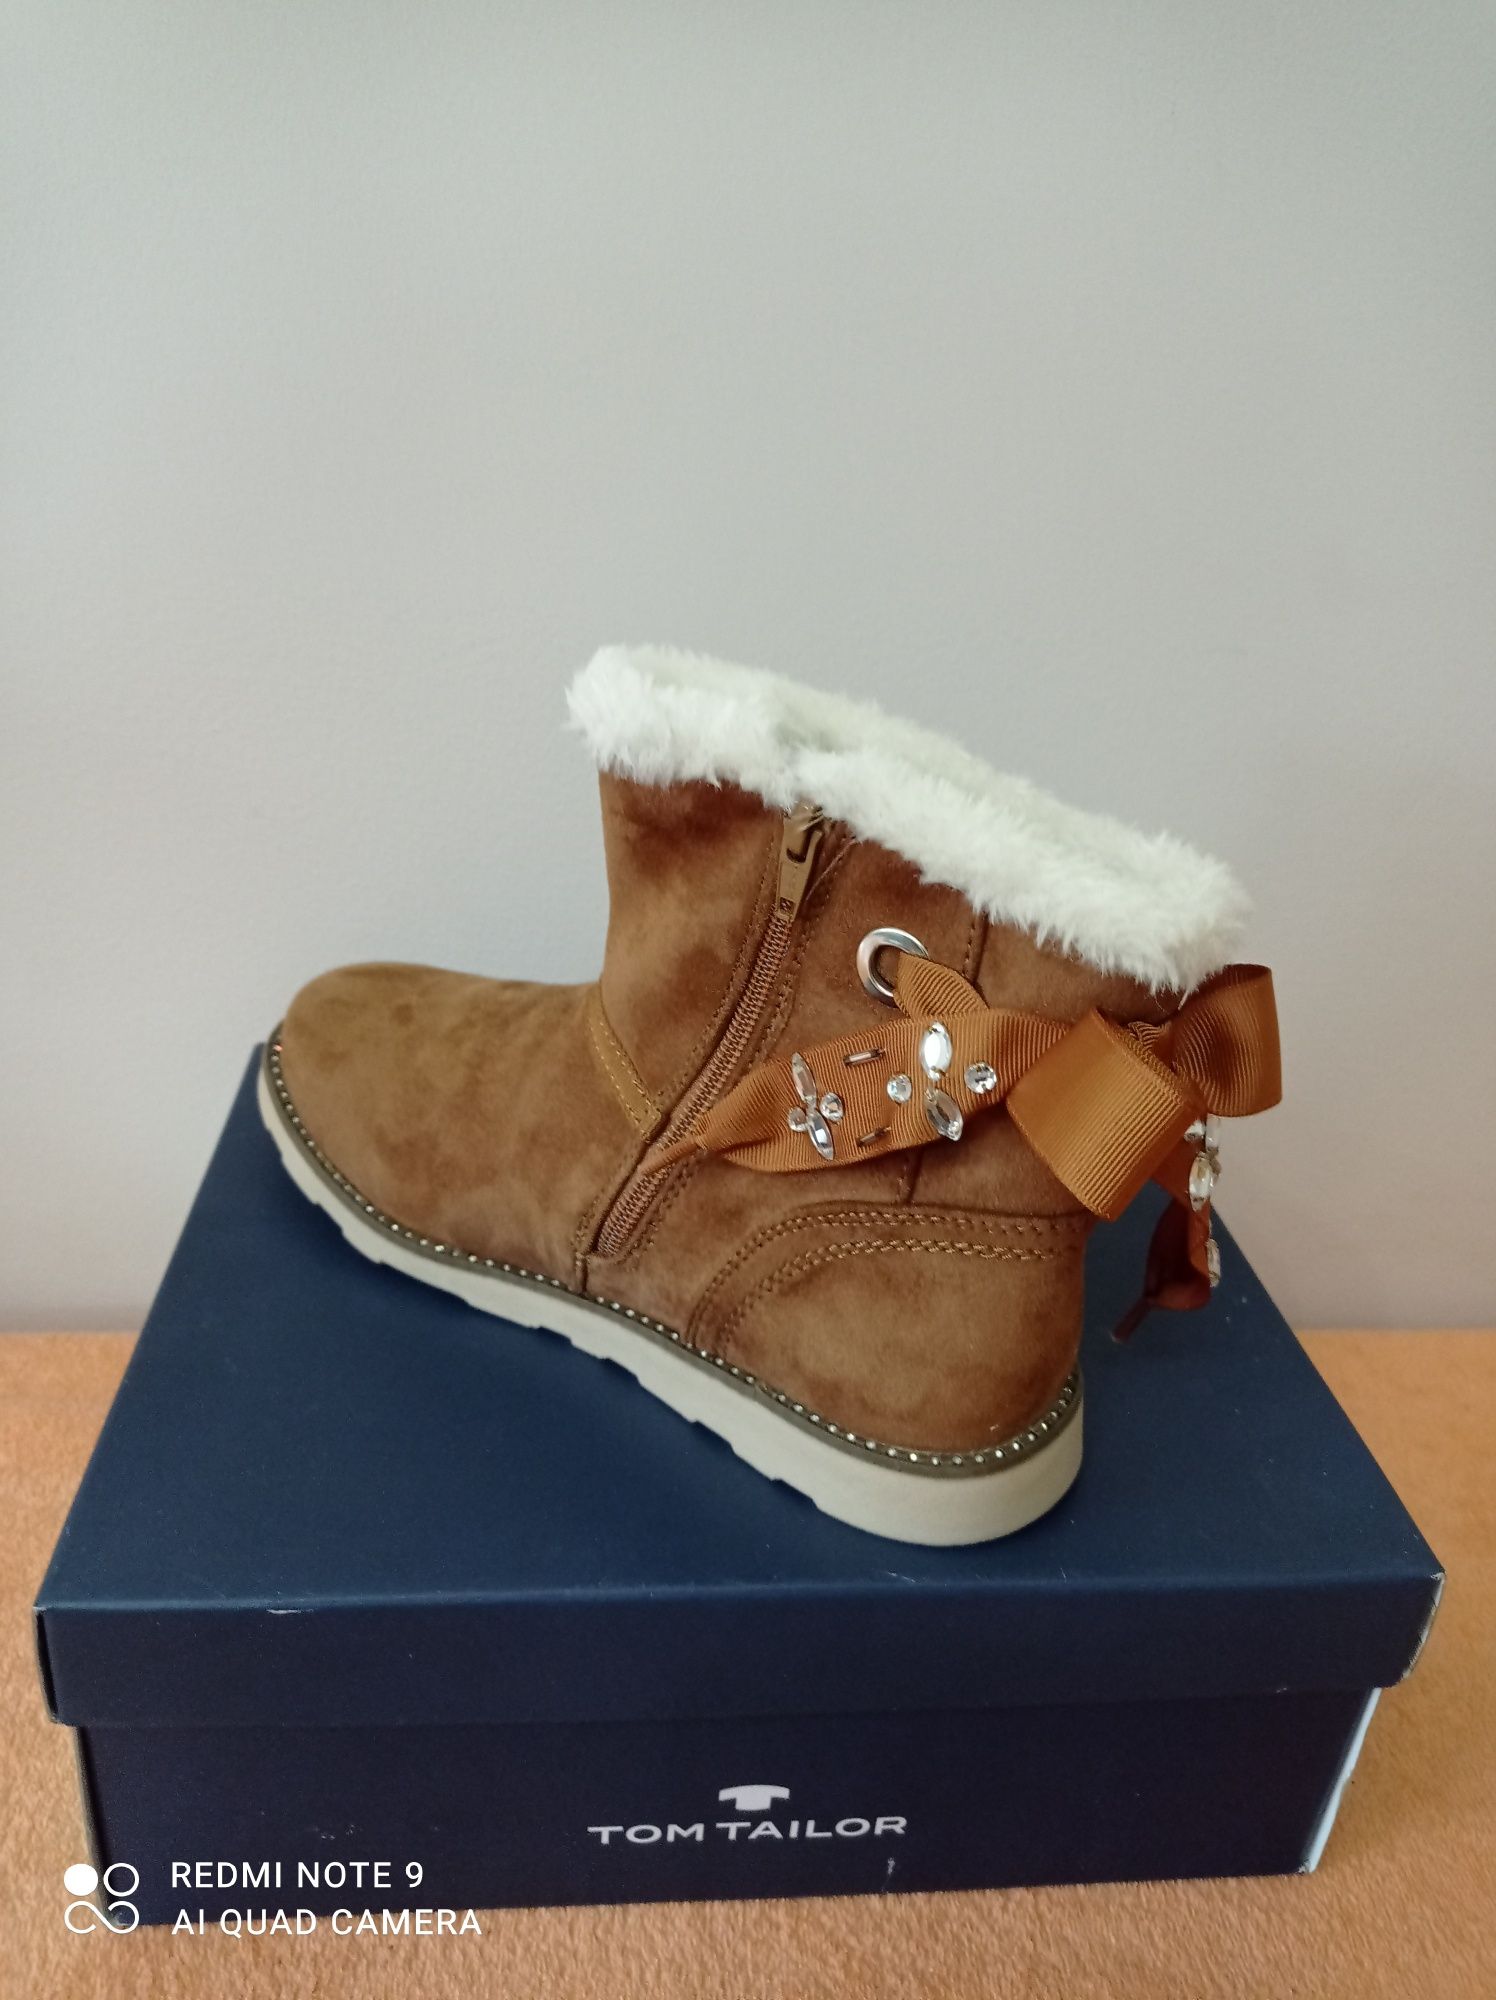 NOWE buty zimowe, śniegowce typ emu Tom Tailor - rozmiar 38.